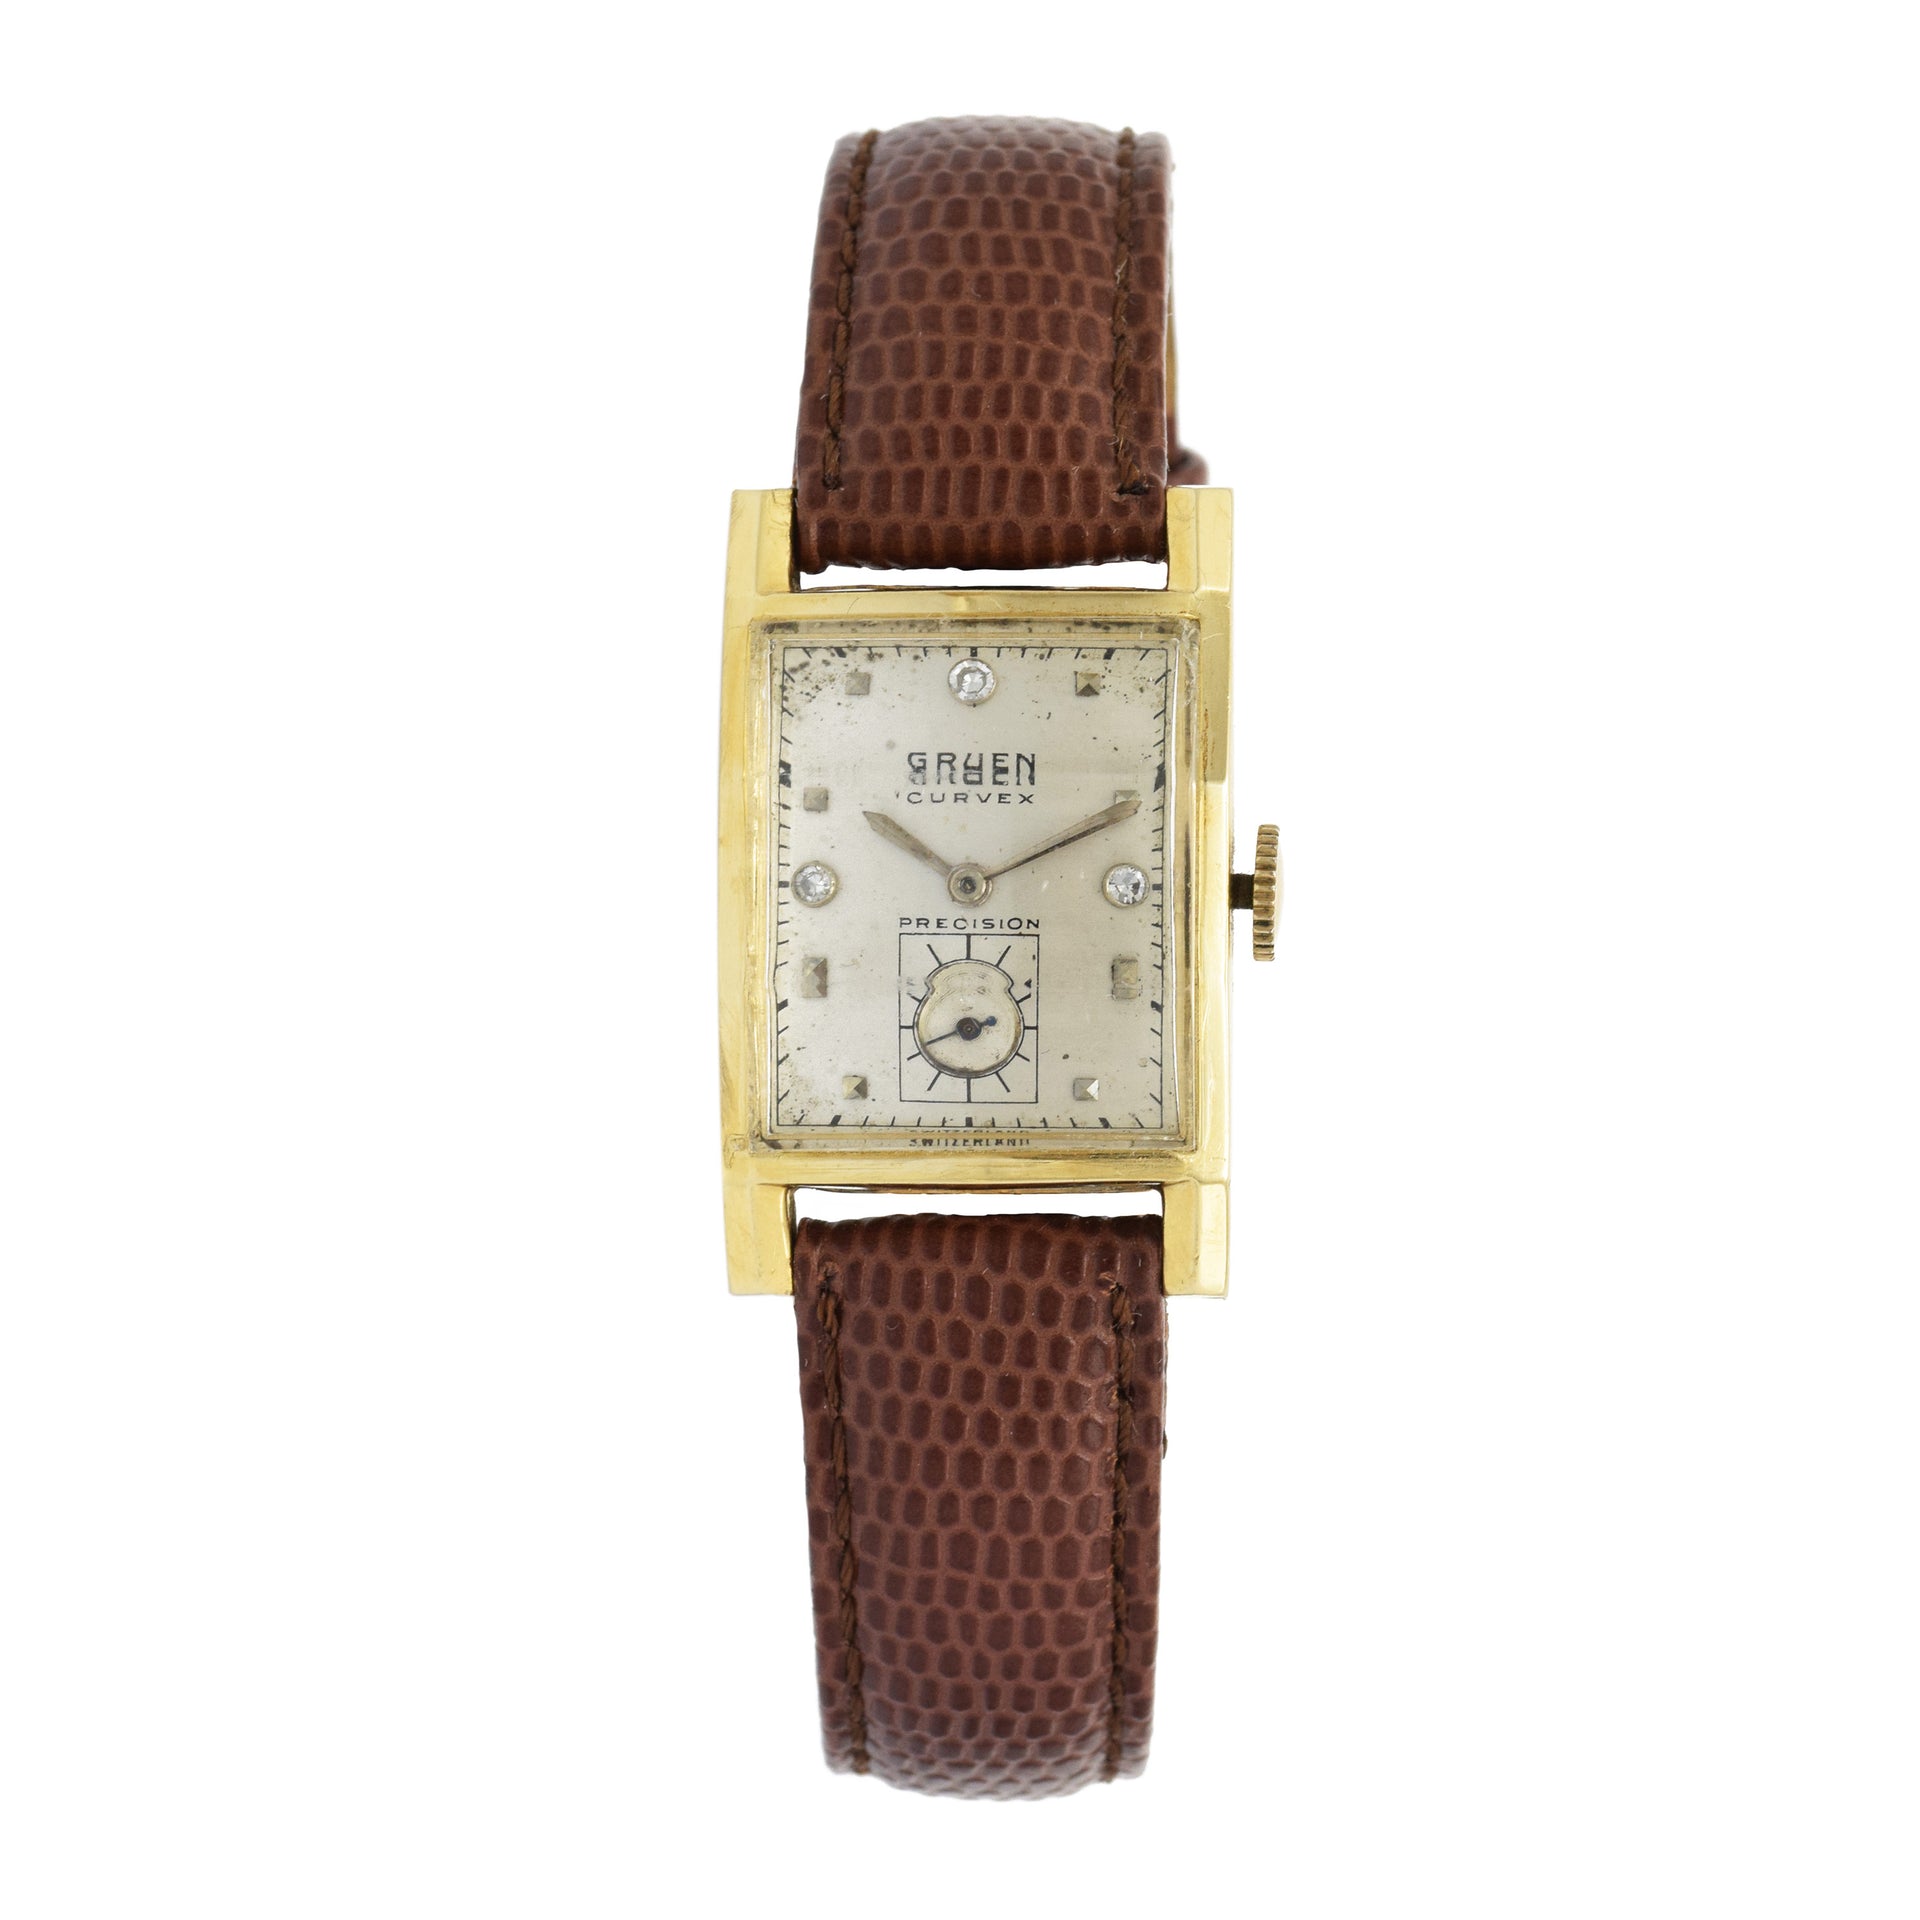 Vintage 1940s Gruen Curvex Watch